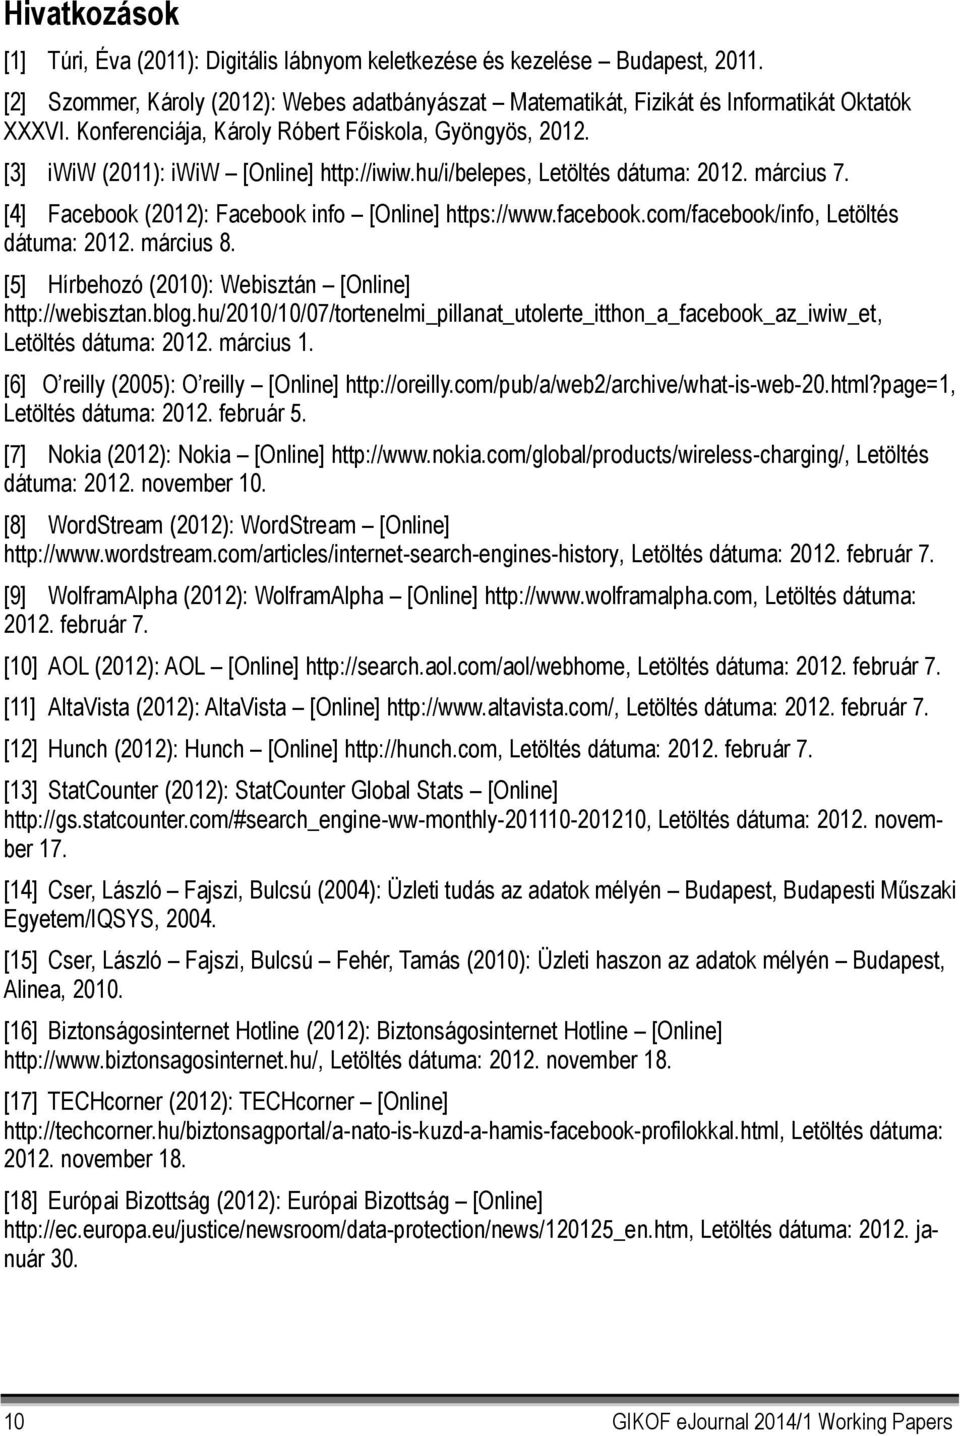 [4] Facebook (2012): Facebook info [Online] https://www.facebook.com/facebook/info, Letöltés dátuma: 2012. március 8. [5] Hírbehozó (2010): Webisztán [Online] http://webisztan.blog.